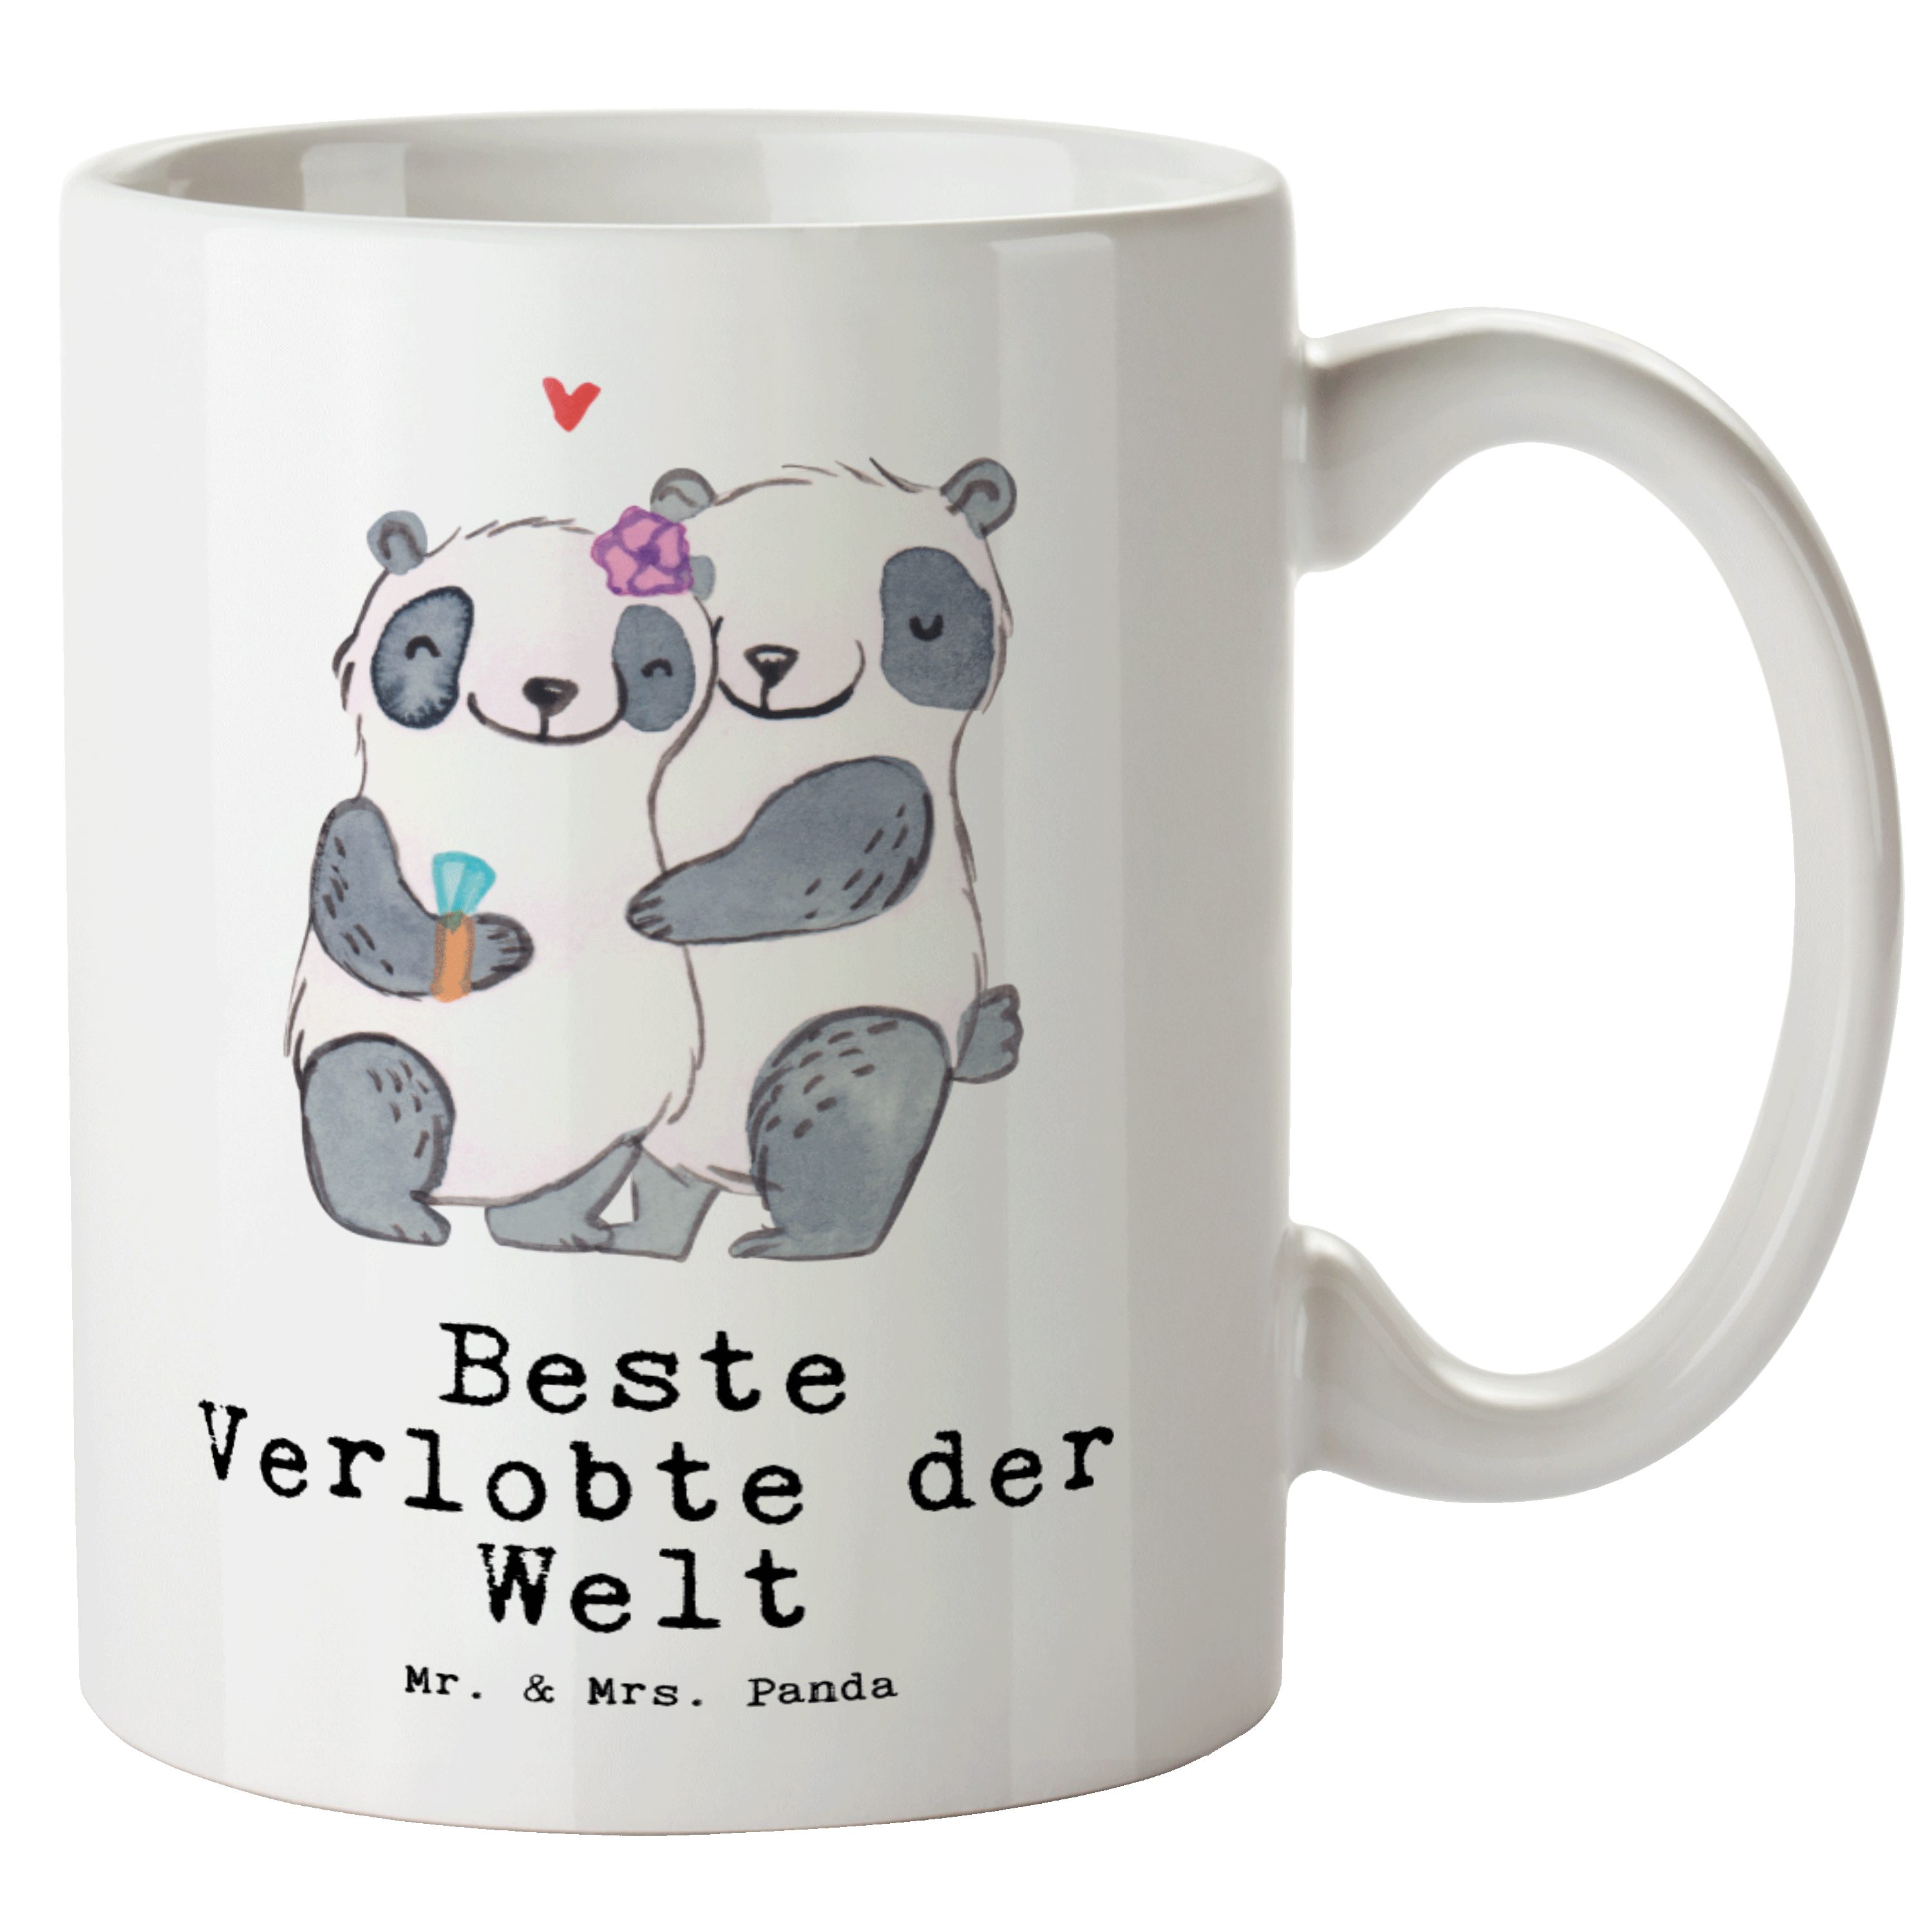 Mr. & Mrs. Panda Tasse Panda Beste Verlobte der Welt - Weiß - Geschenk, Groß, Geschenkidee, XL Tasse Keramik